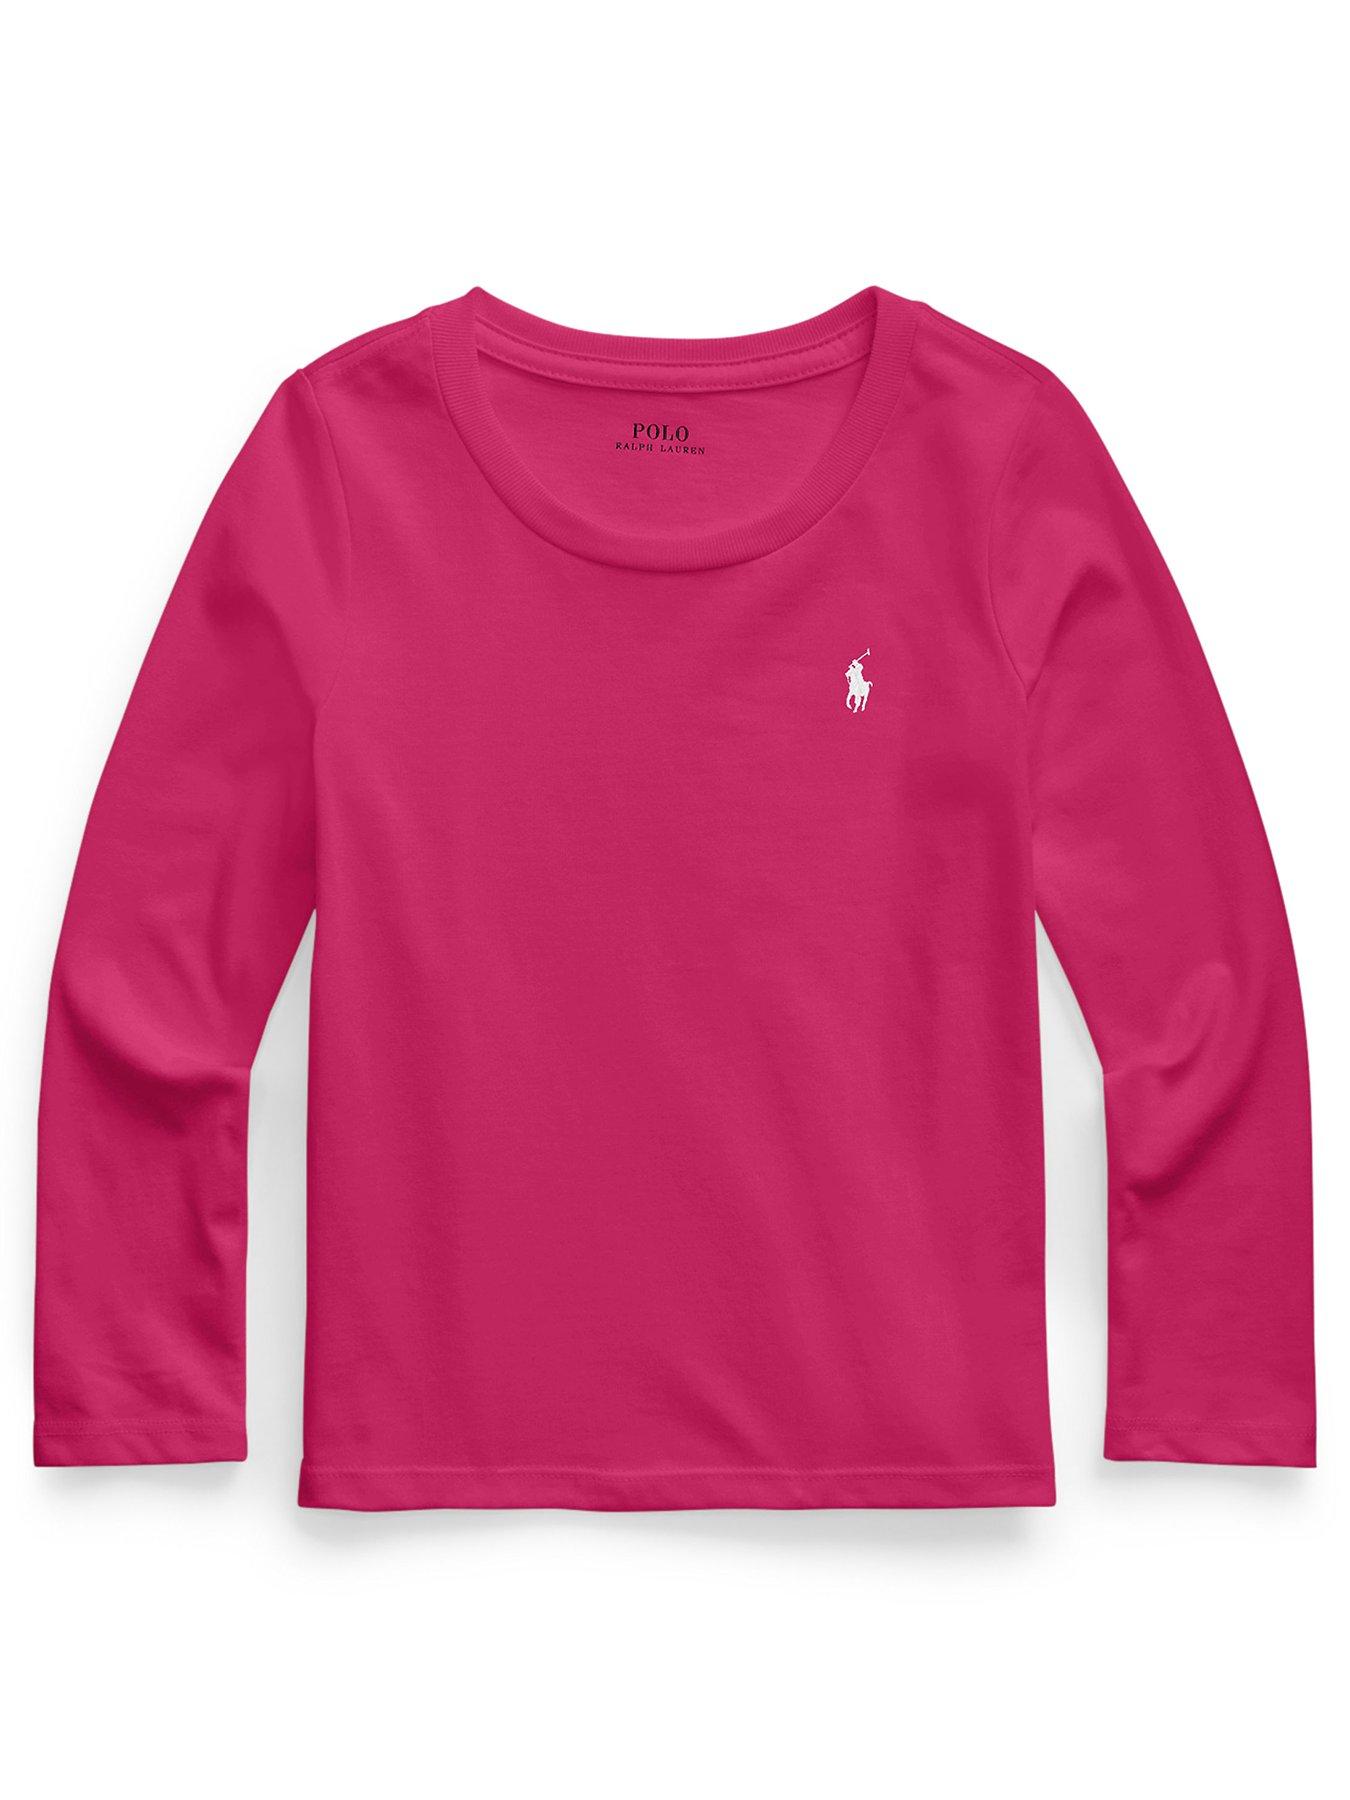 Ralph Lauren Girls Long Sleeve T-shirt - Preppy Pink | very.co.uk